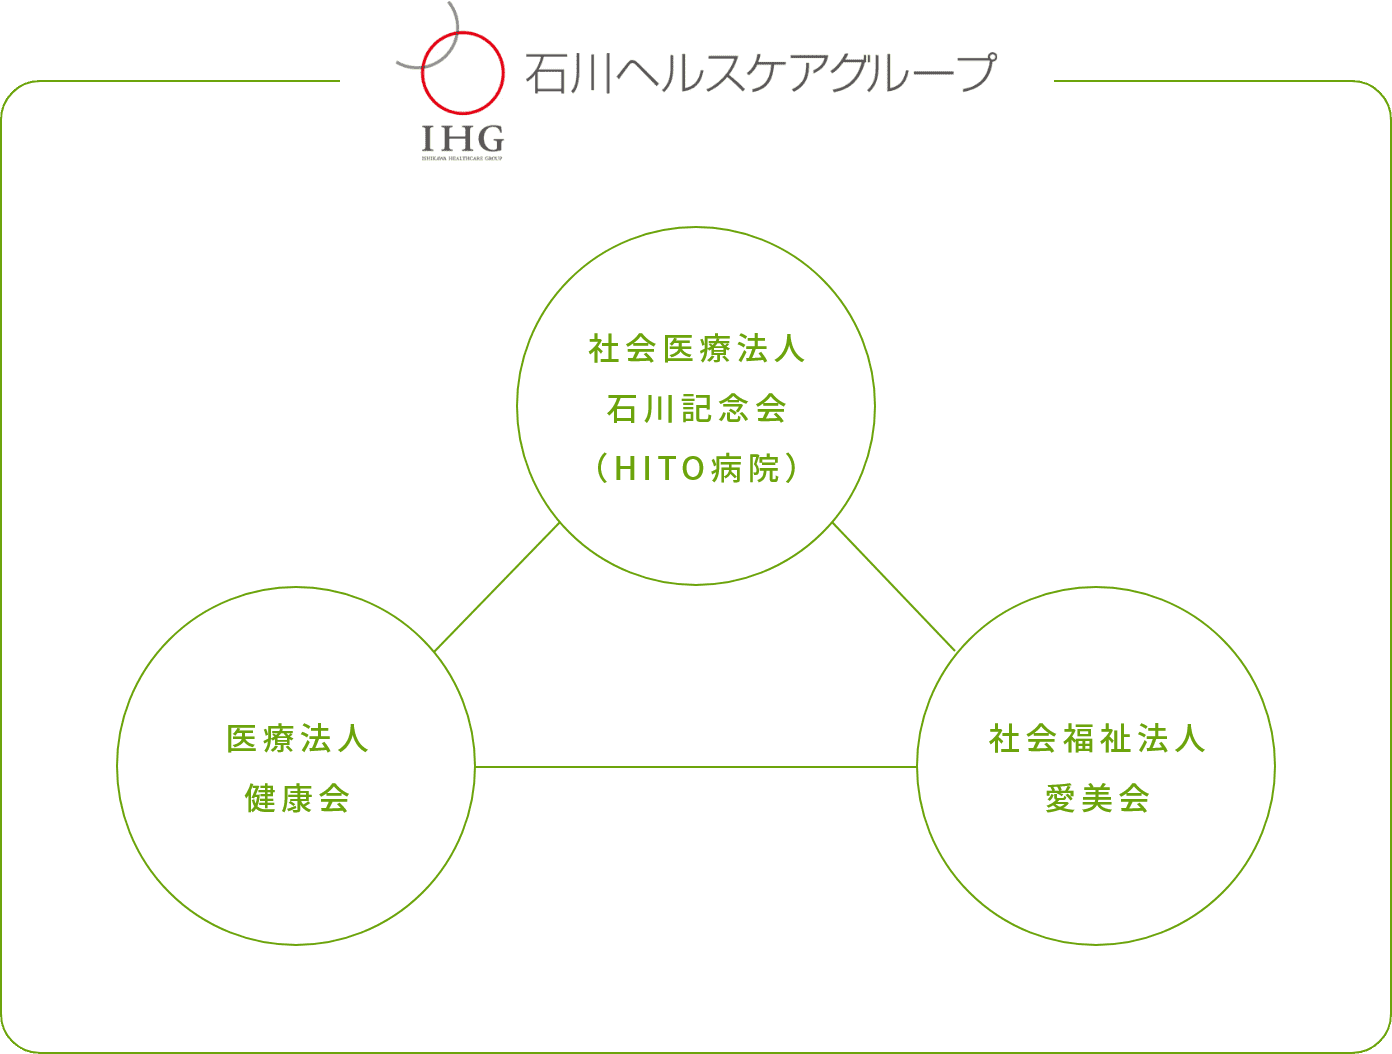 イメージ:石川ヘルスケアグループ組織図